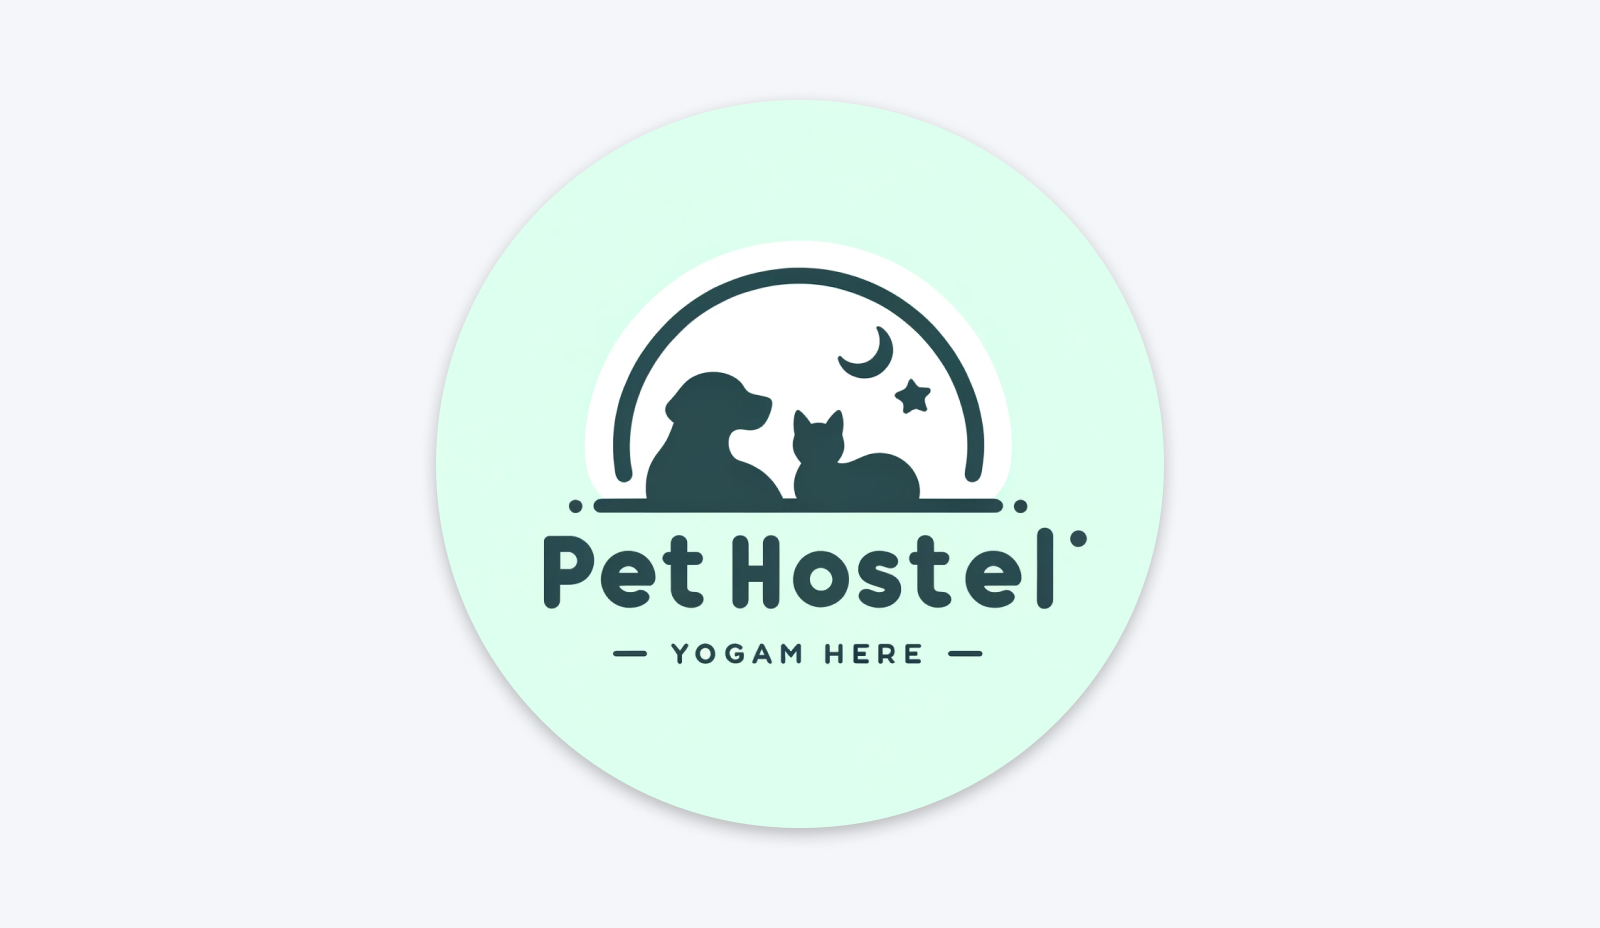 Logotipo que obtuvimos para una empresa de cuidado de mascotas